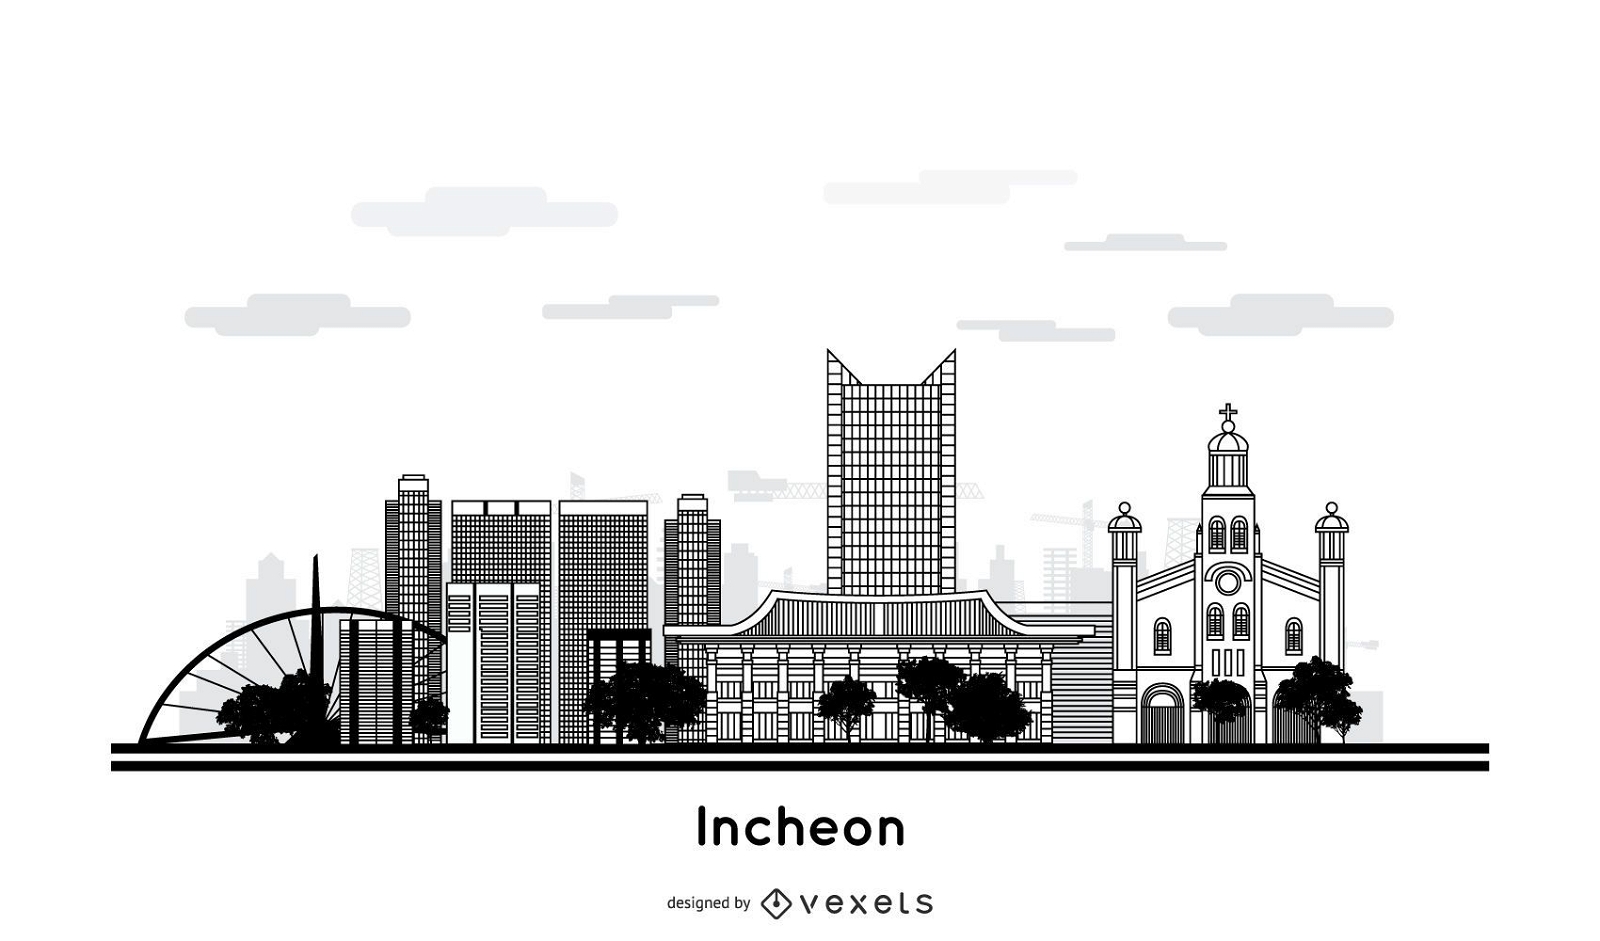 Diseño del horizonte de la ciudad de Incheon